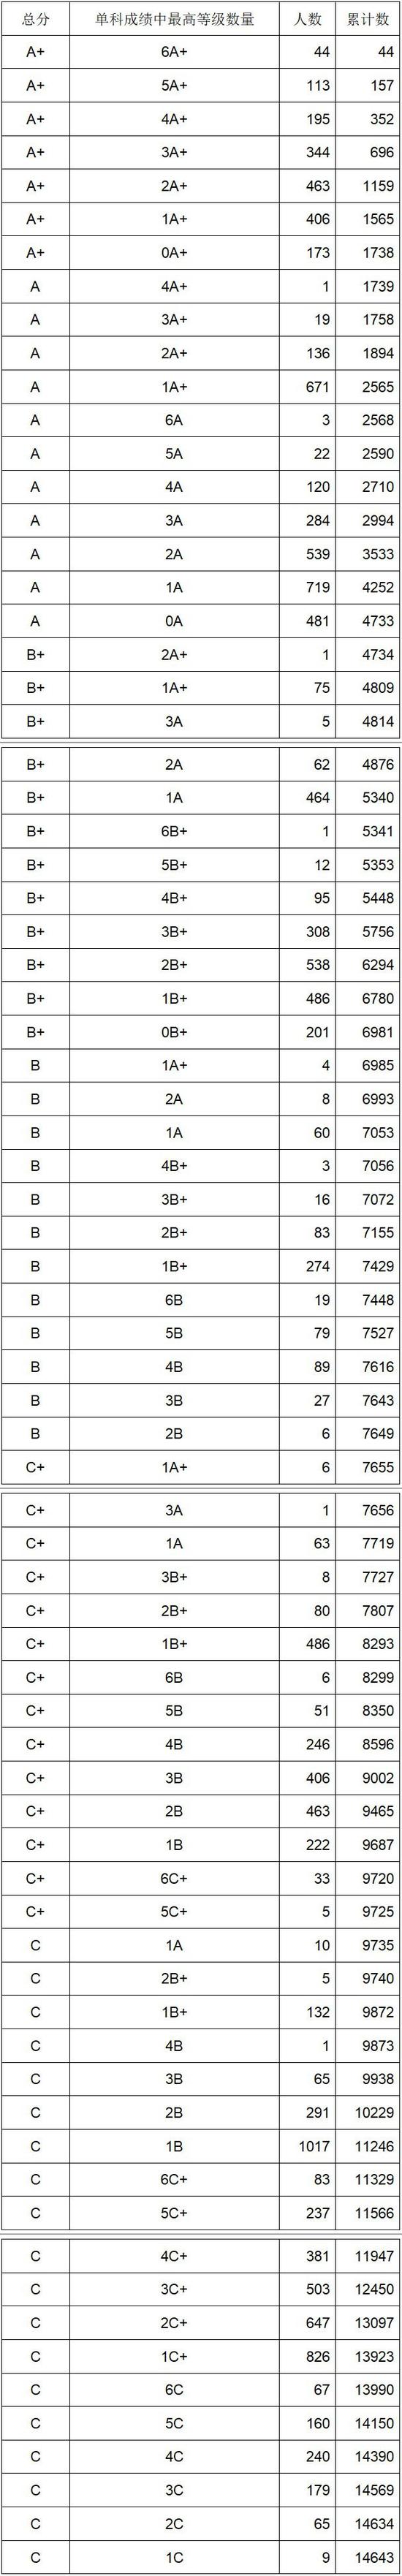 柳州中考成绩排名_今年中考成绩出炉,柳州市区总成绩A+共2521人,好成绩(2)